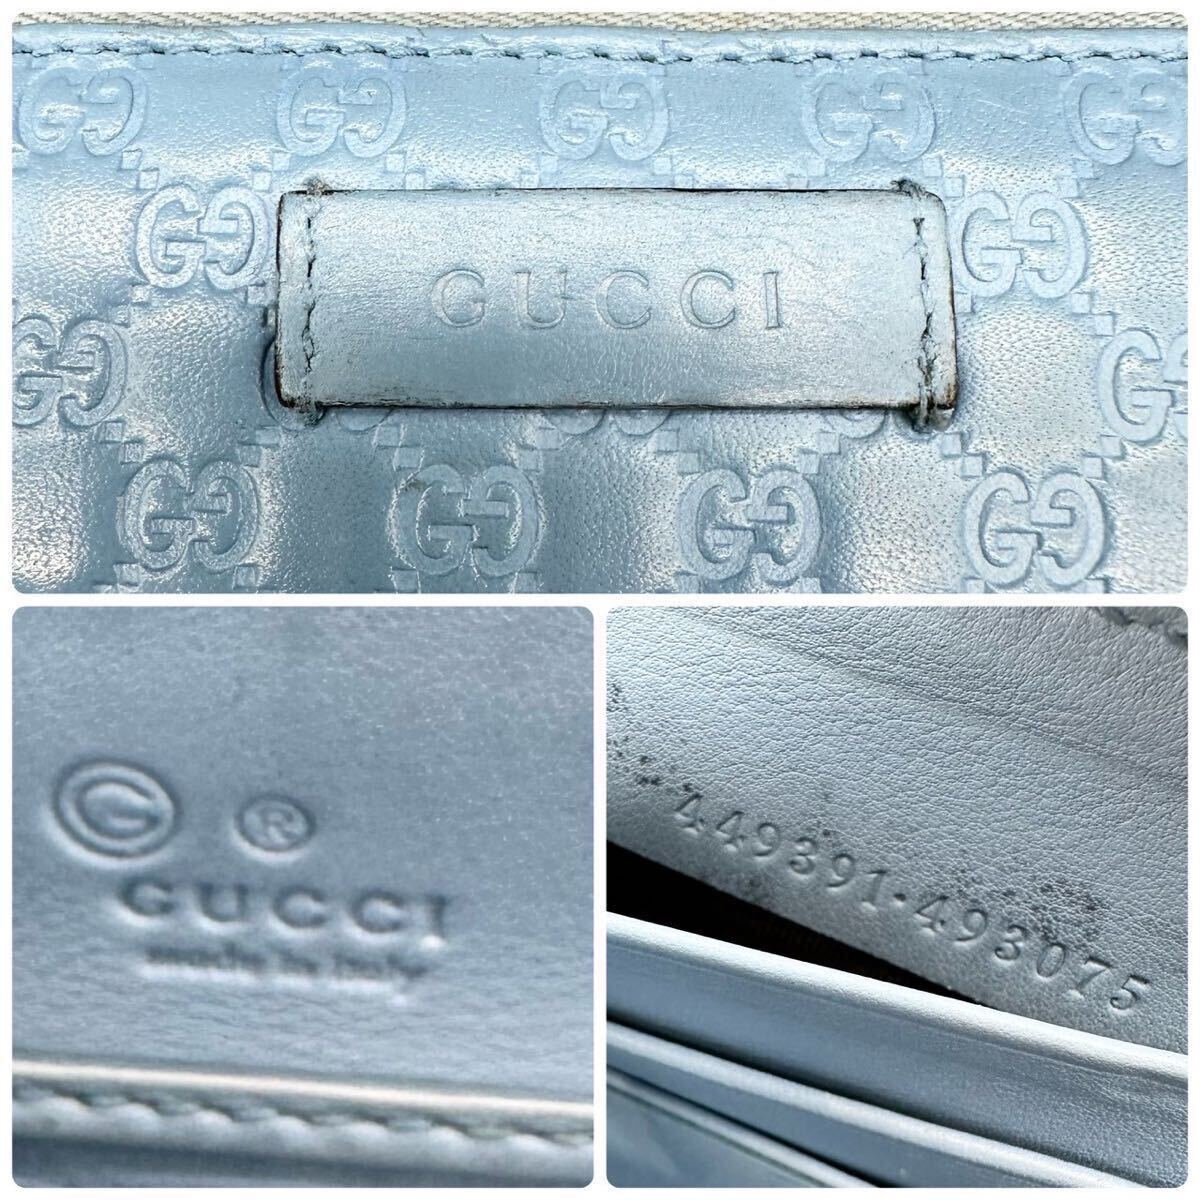  прекрасный товар *GUCCI Gucci раунд застежка-молния длинный кошелек микро simaGG рисунок длинный бумажник натуральная кожа мужской женский бледно-голубой голубой пастель 